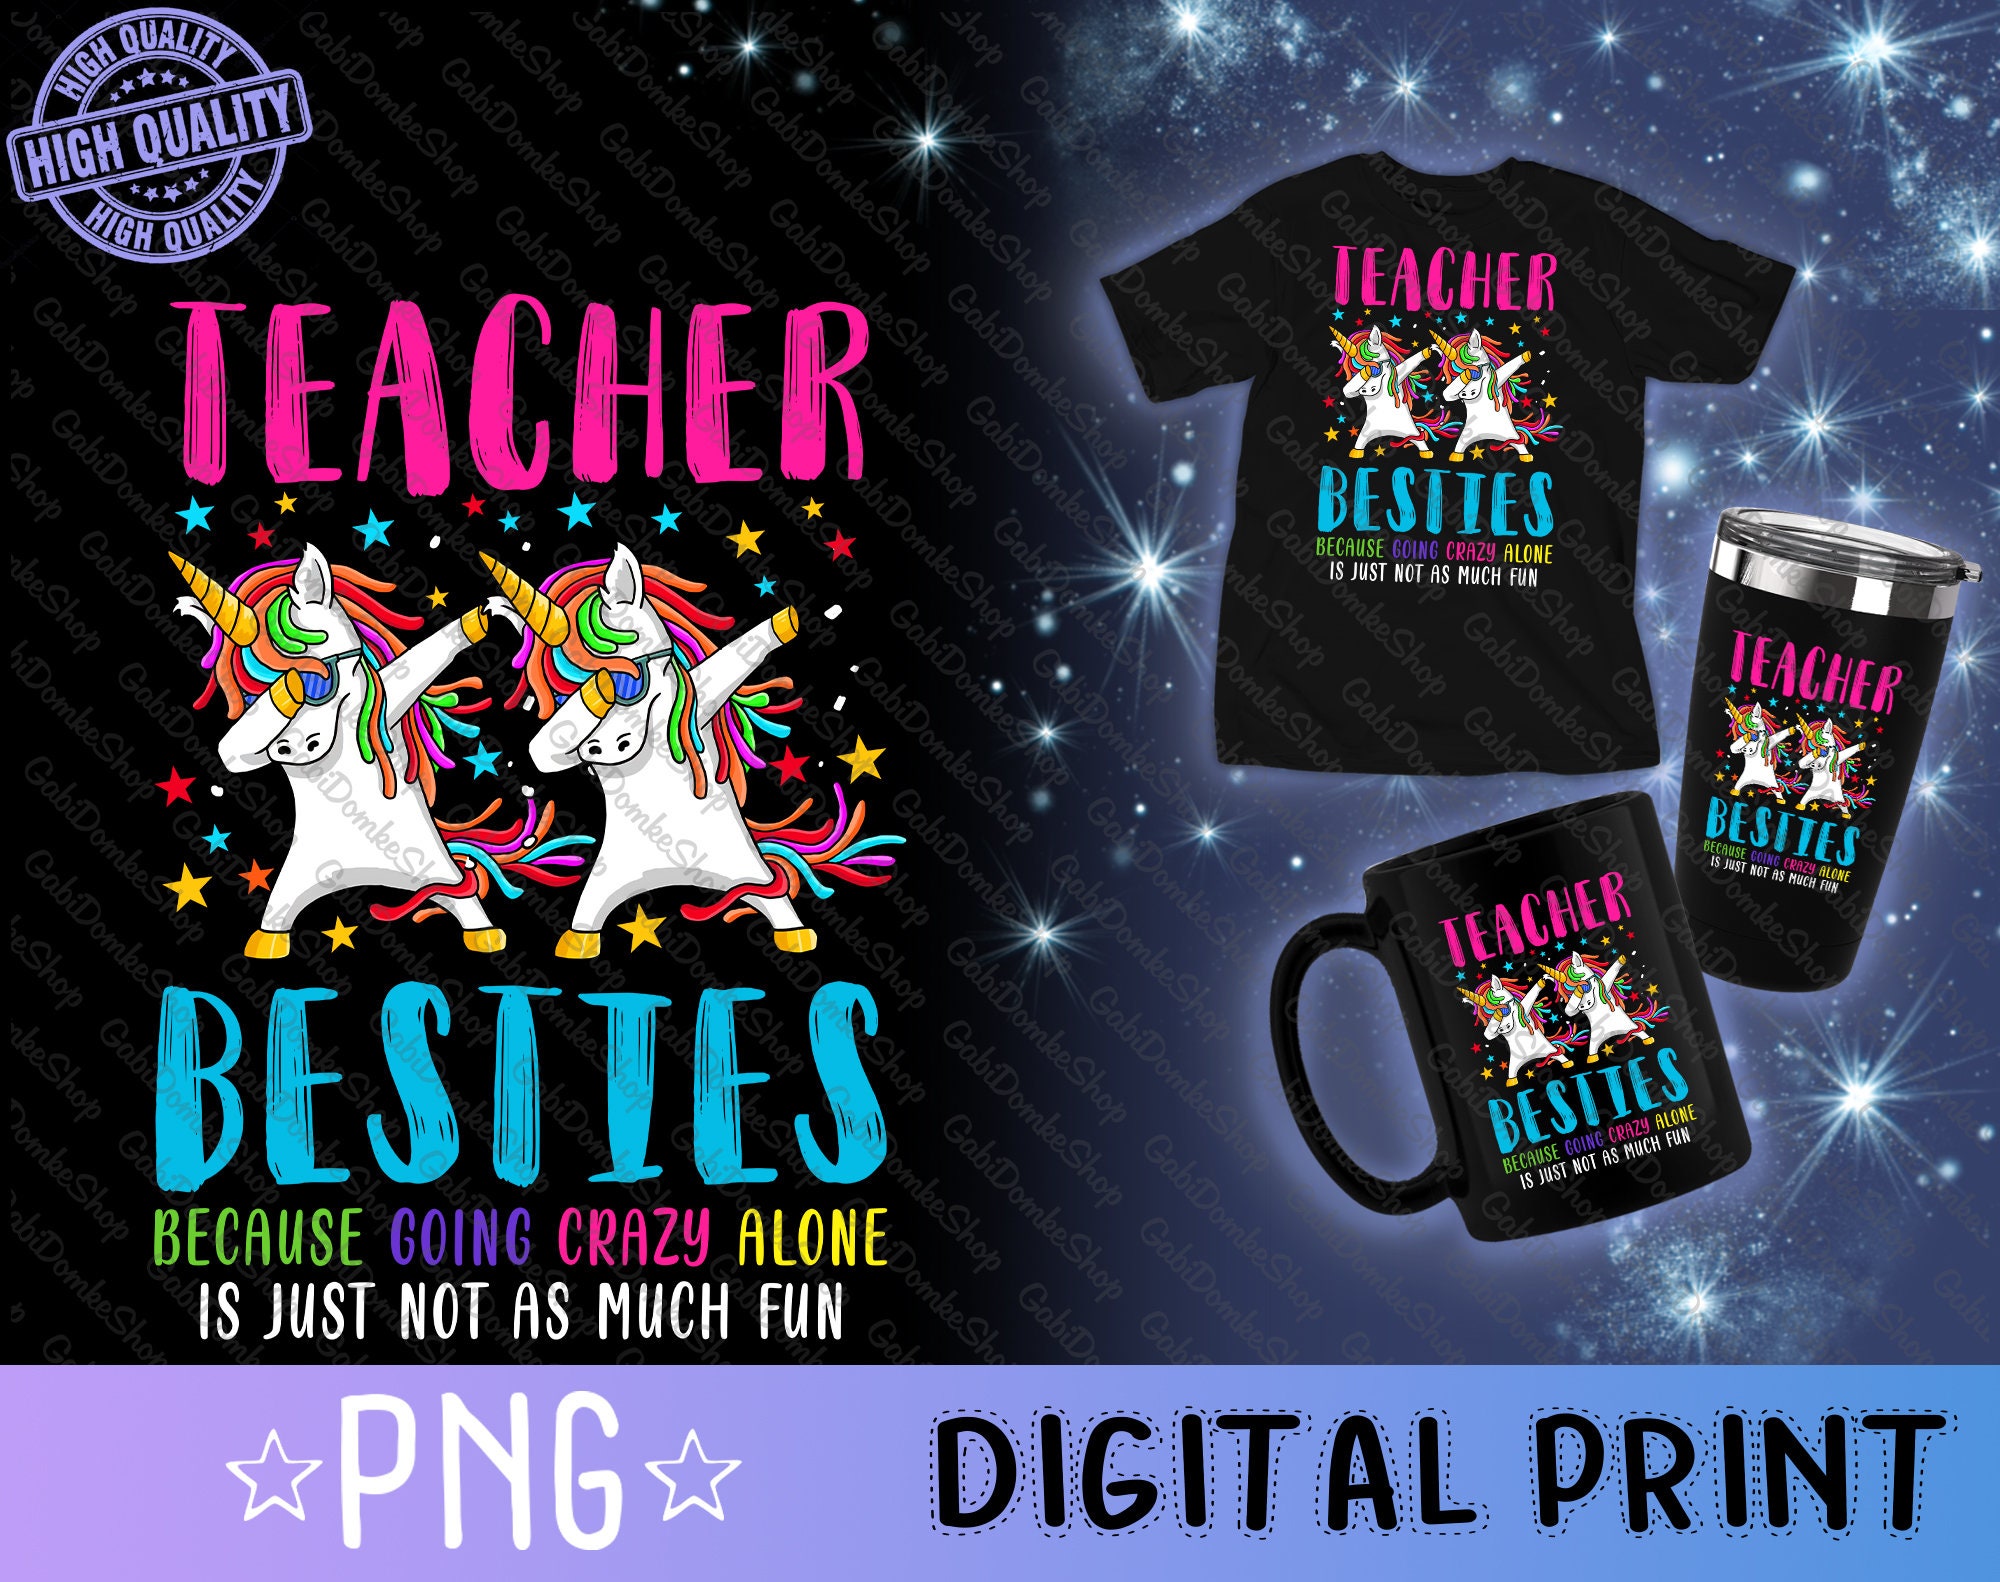  She's My Teacher Bestie - Camisa personalizada, camisetas para  profesoras de escuela, camisetas personalizadas para mujer, camisa de  profesora de bondad, camisas de profesora para mujer, camisa de profesora  sustituta 